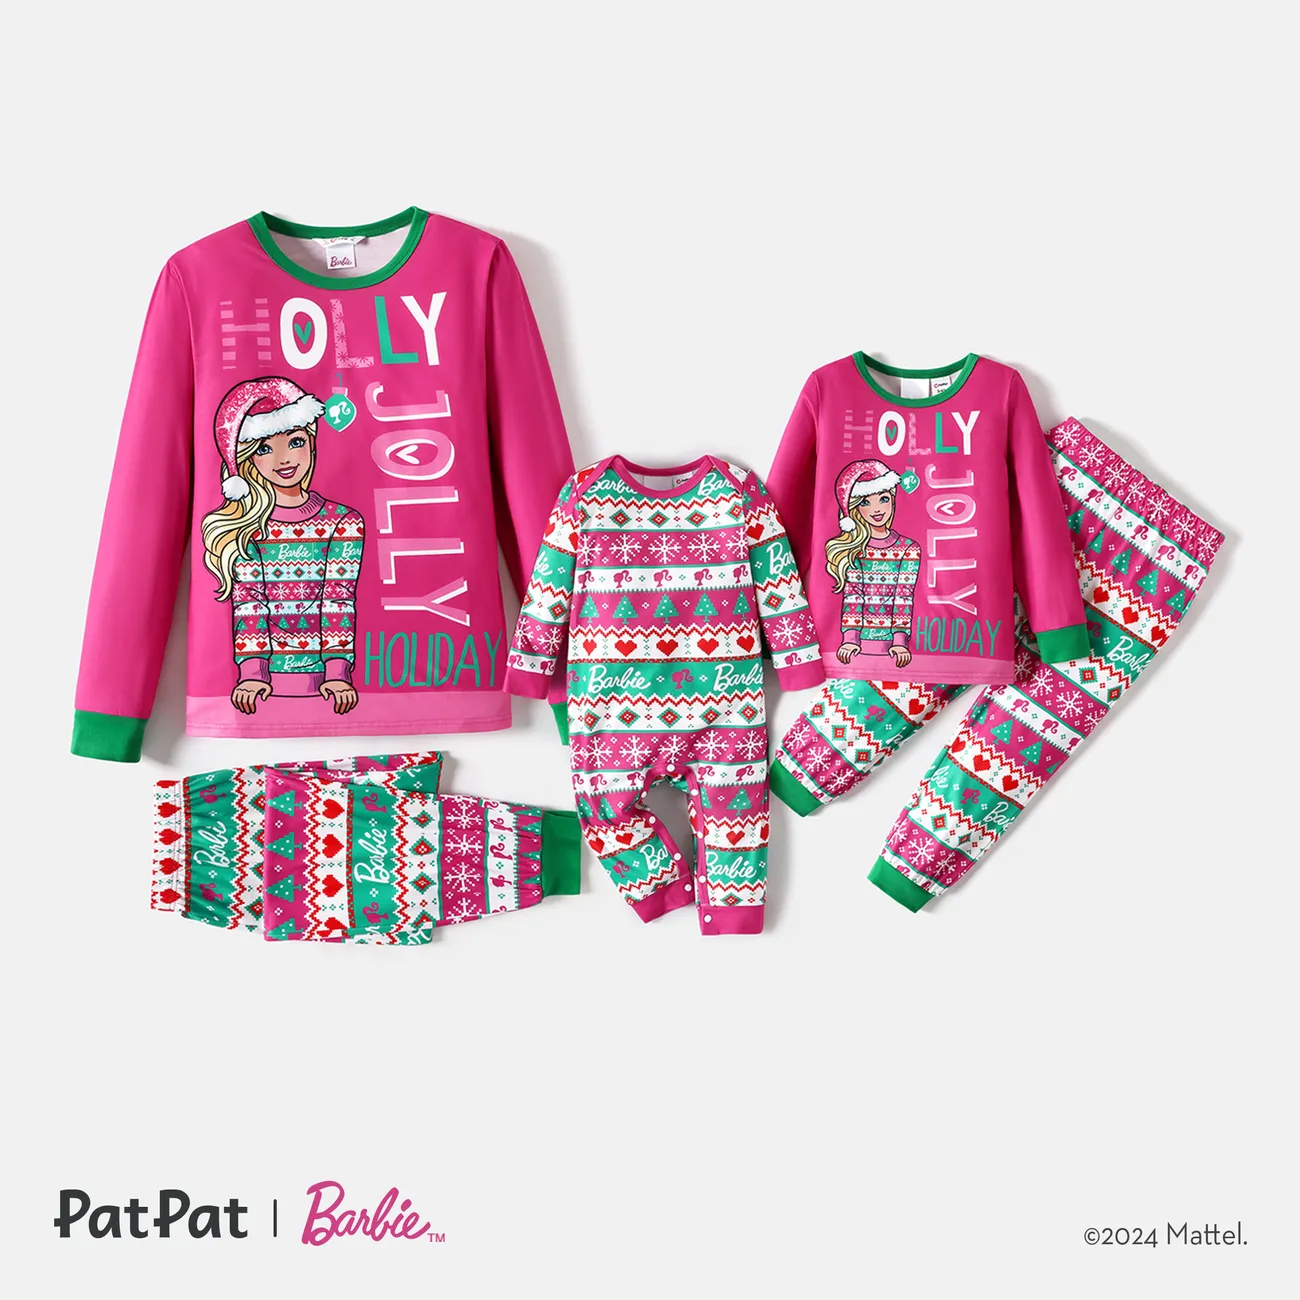 Barbie Navidad Mami y yo Conjuntos combinados para familia Pijamas (Flame Resistant) Rosa caliente big image 1